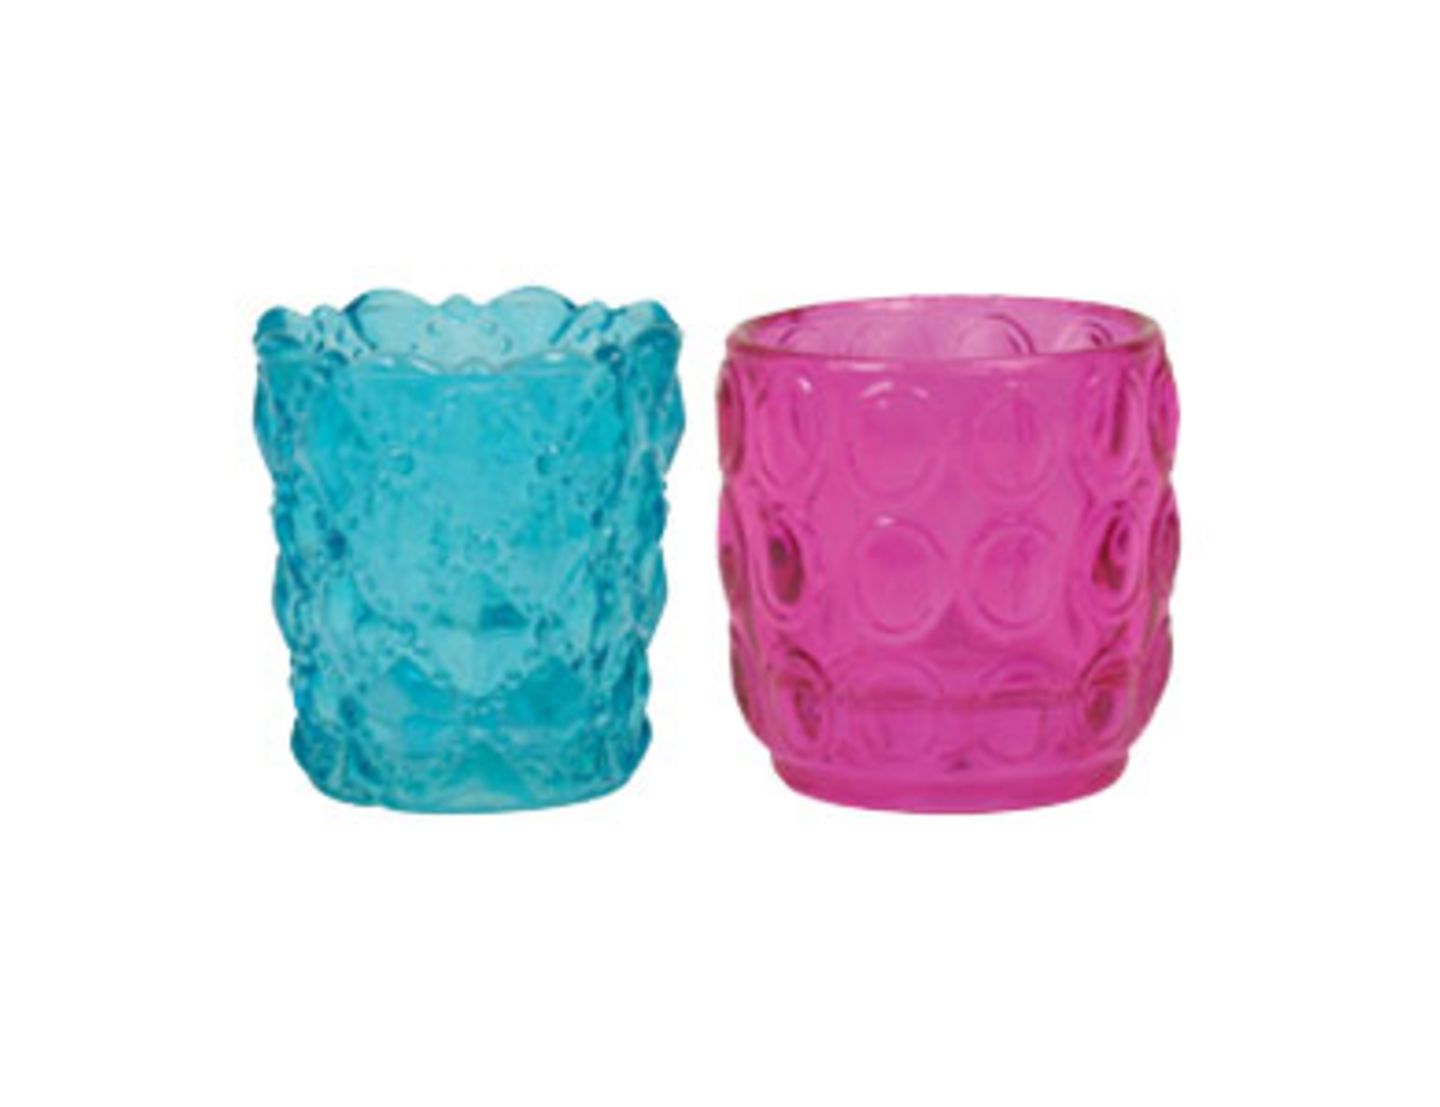 Diese bunten Gläser für Teelichter bekommt ihr in verschiedenen Farben und Formvarianten bei Bertine. Um drei Euro.